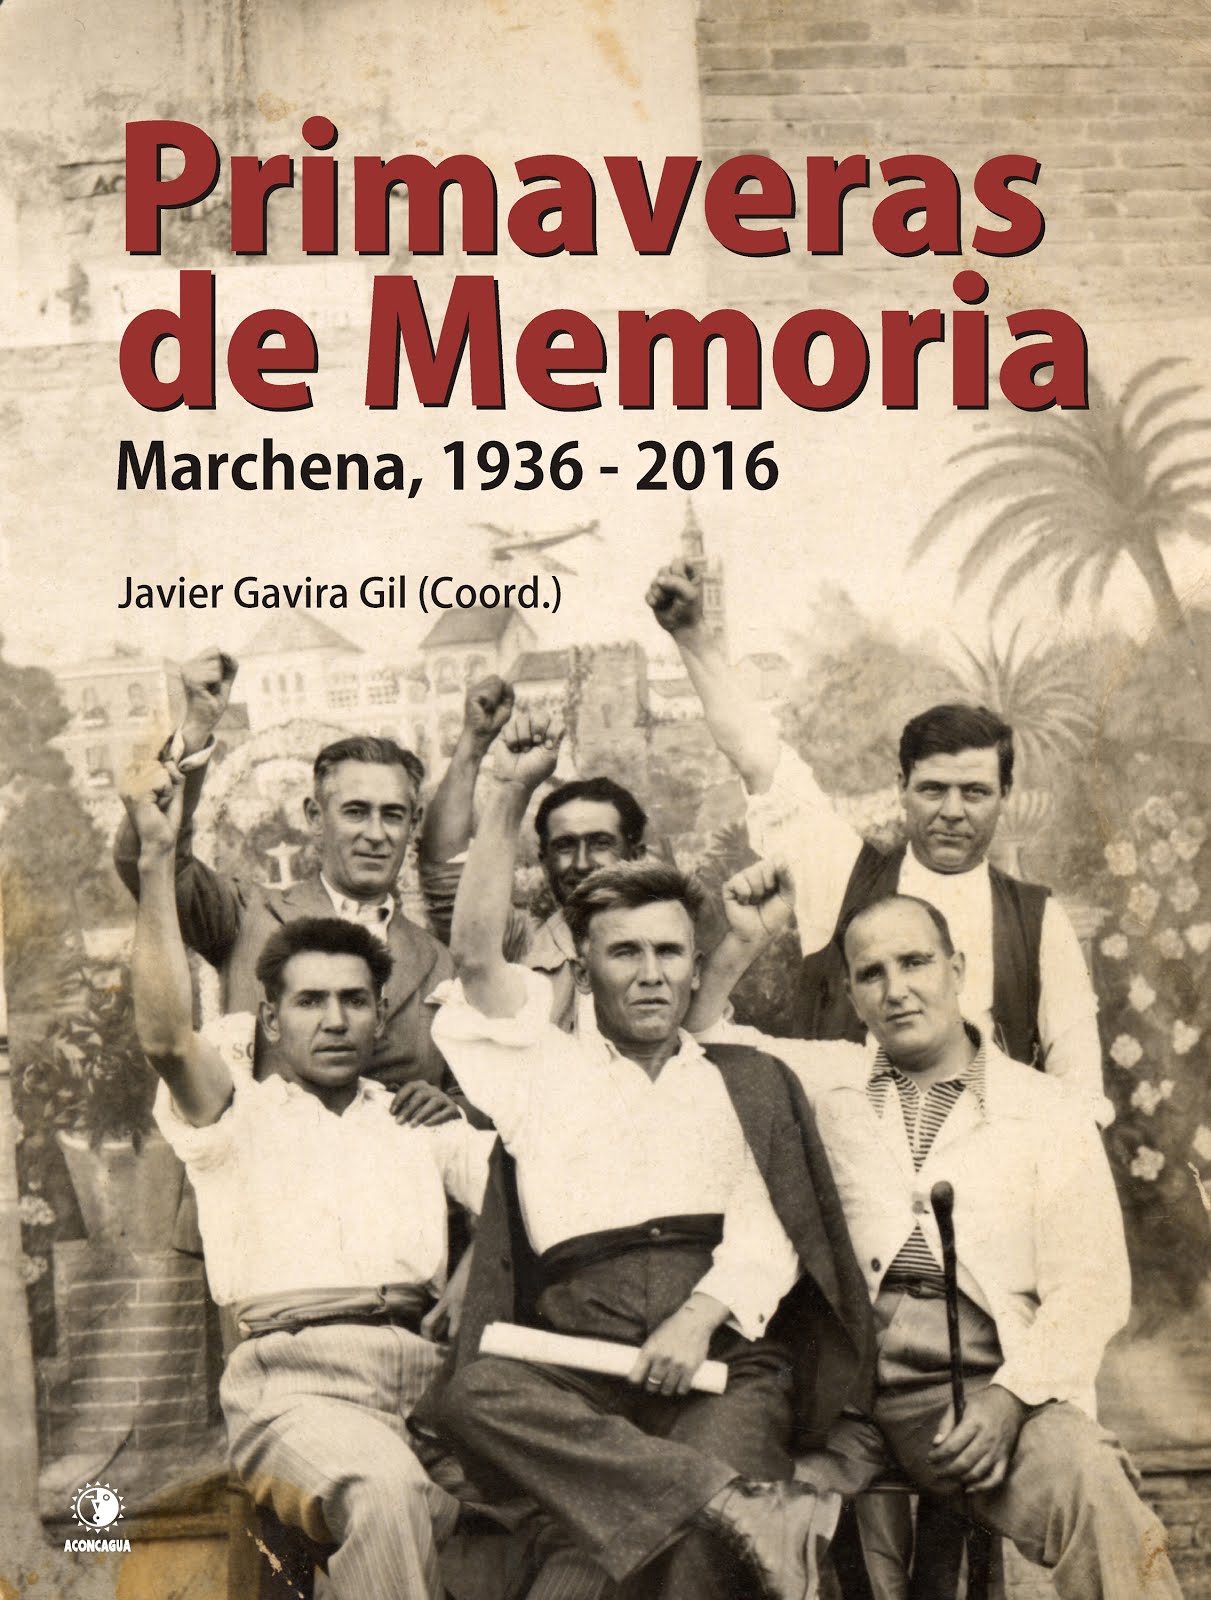 Primaveras de Memoria. Marchena 1936-2016.